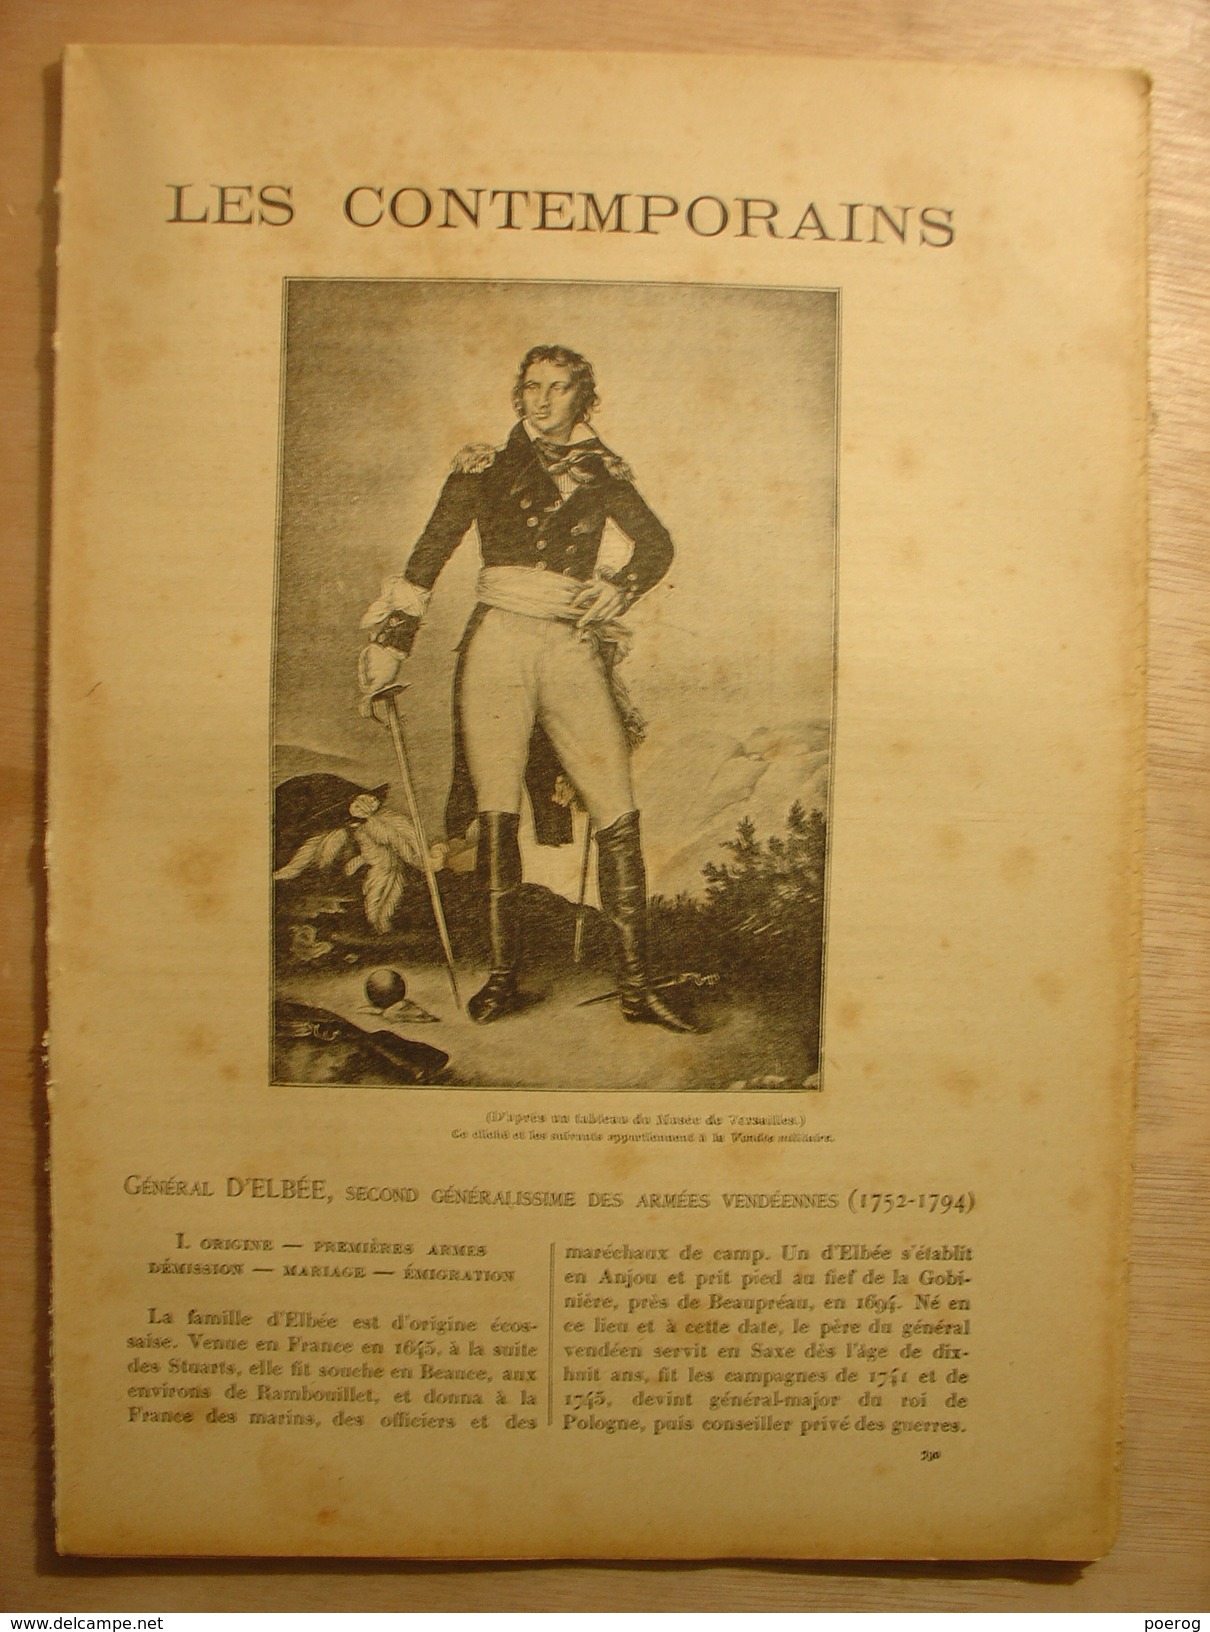 GENERAL D'ELBEE SECOND GENERALISSIME DES ARMEES VENDEENNES (1760-1793) - LES CONTEMPORAINS - MONOGRAPHIE AIMONT - Vendée - Biographie